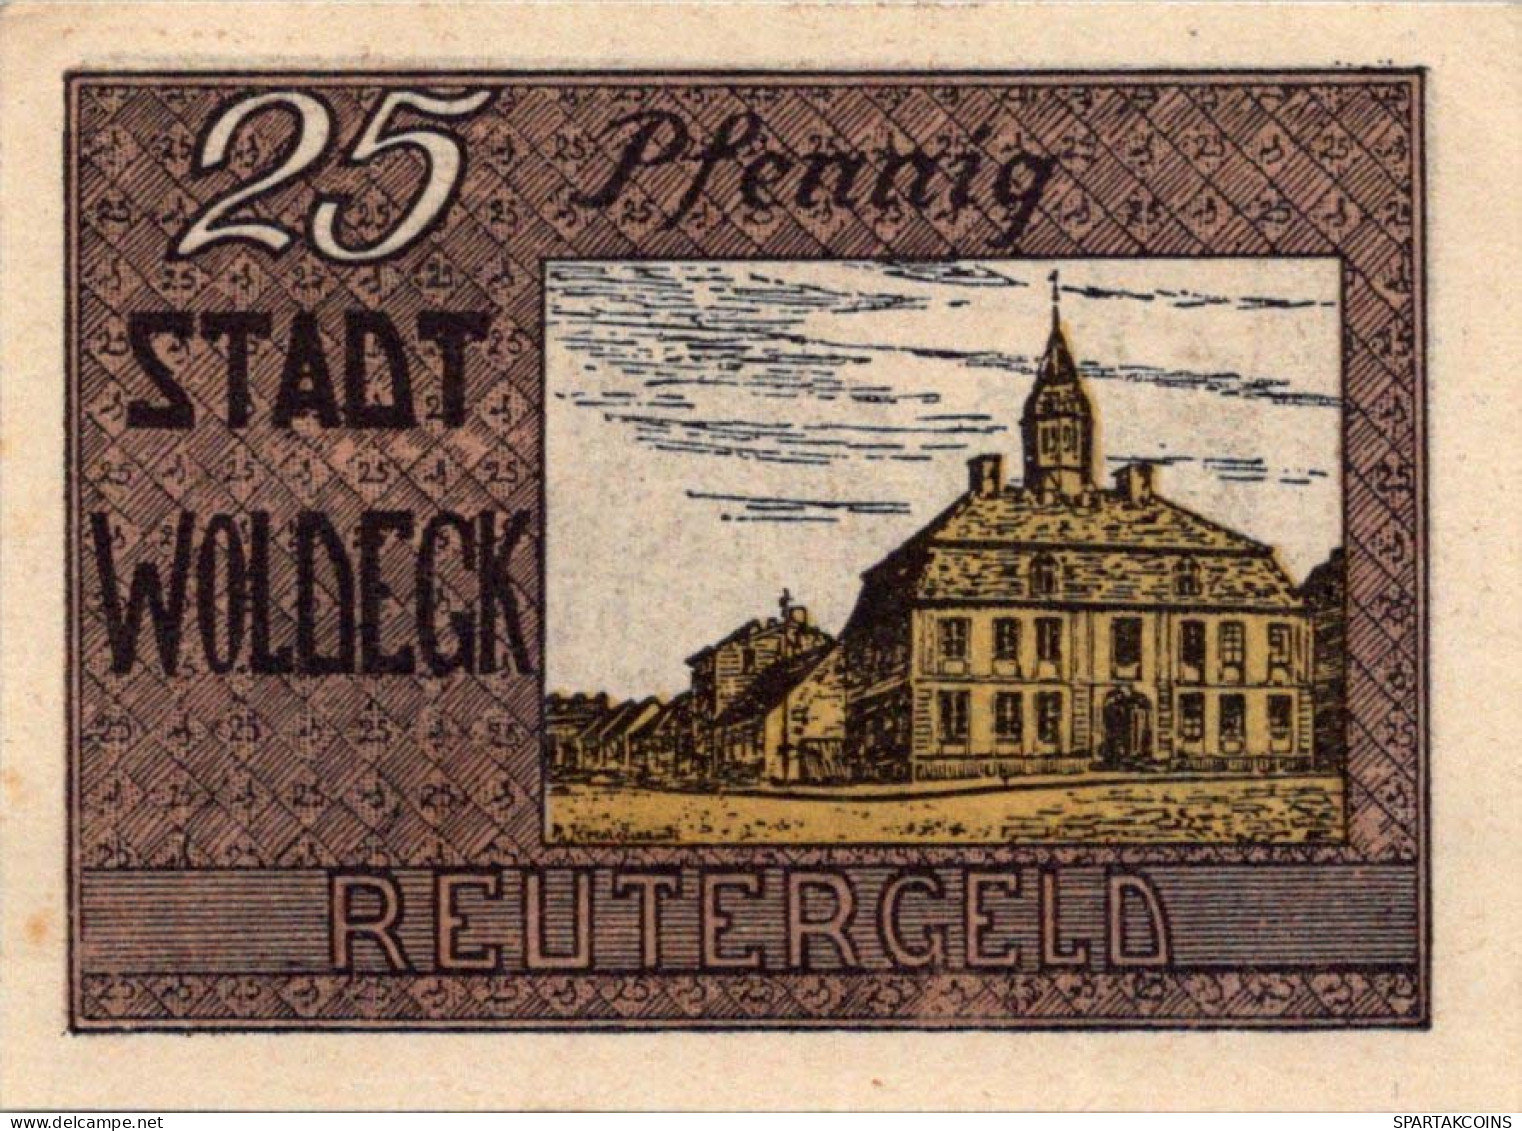 25 PFENNIG 1922 Stadt WOLDEGK Mecklenburg-Strelitz DEUTSCHLAND Notgeld #PG340 - [11] Local Banknote Issues